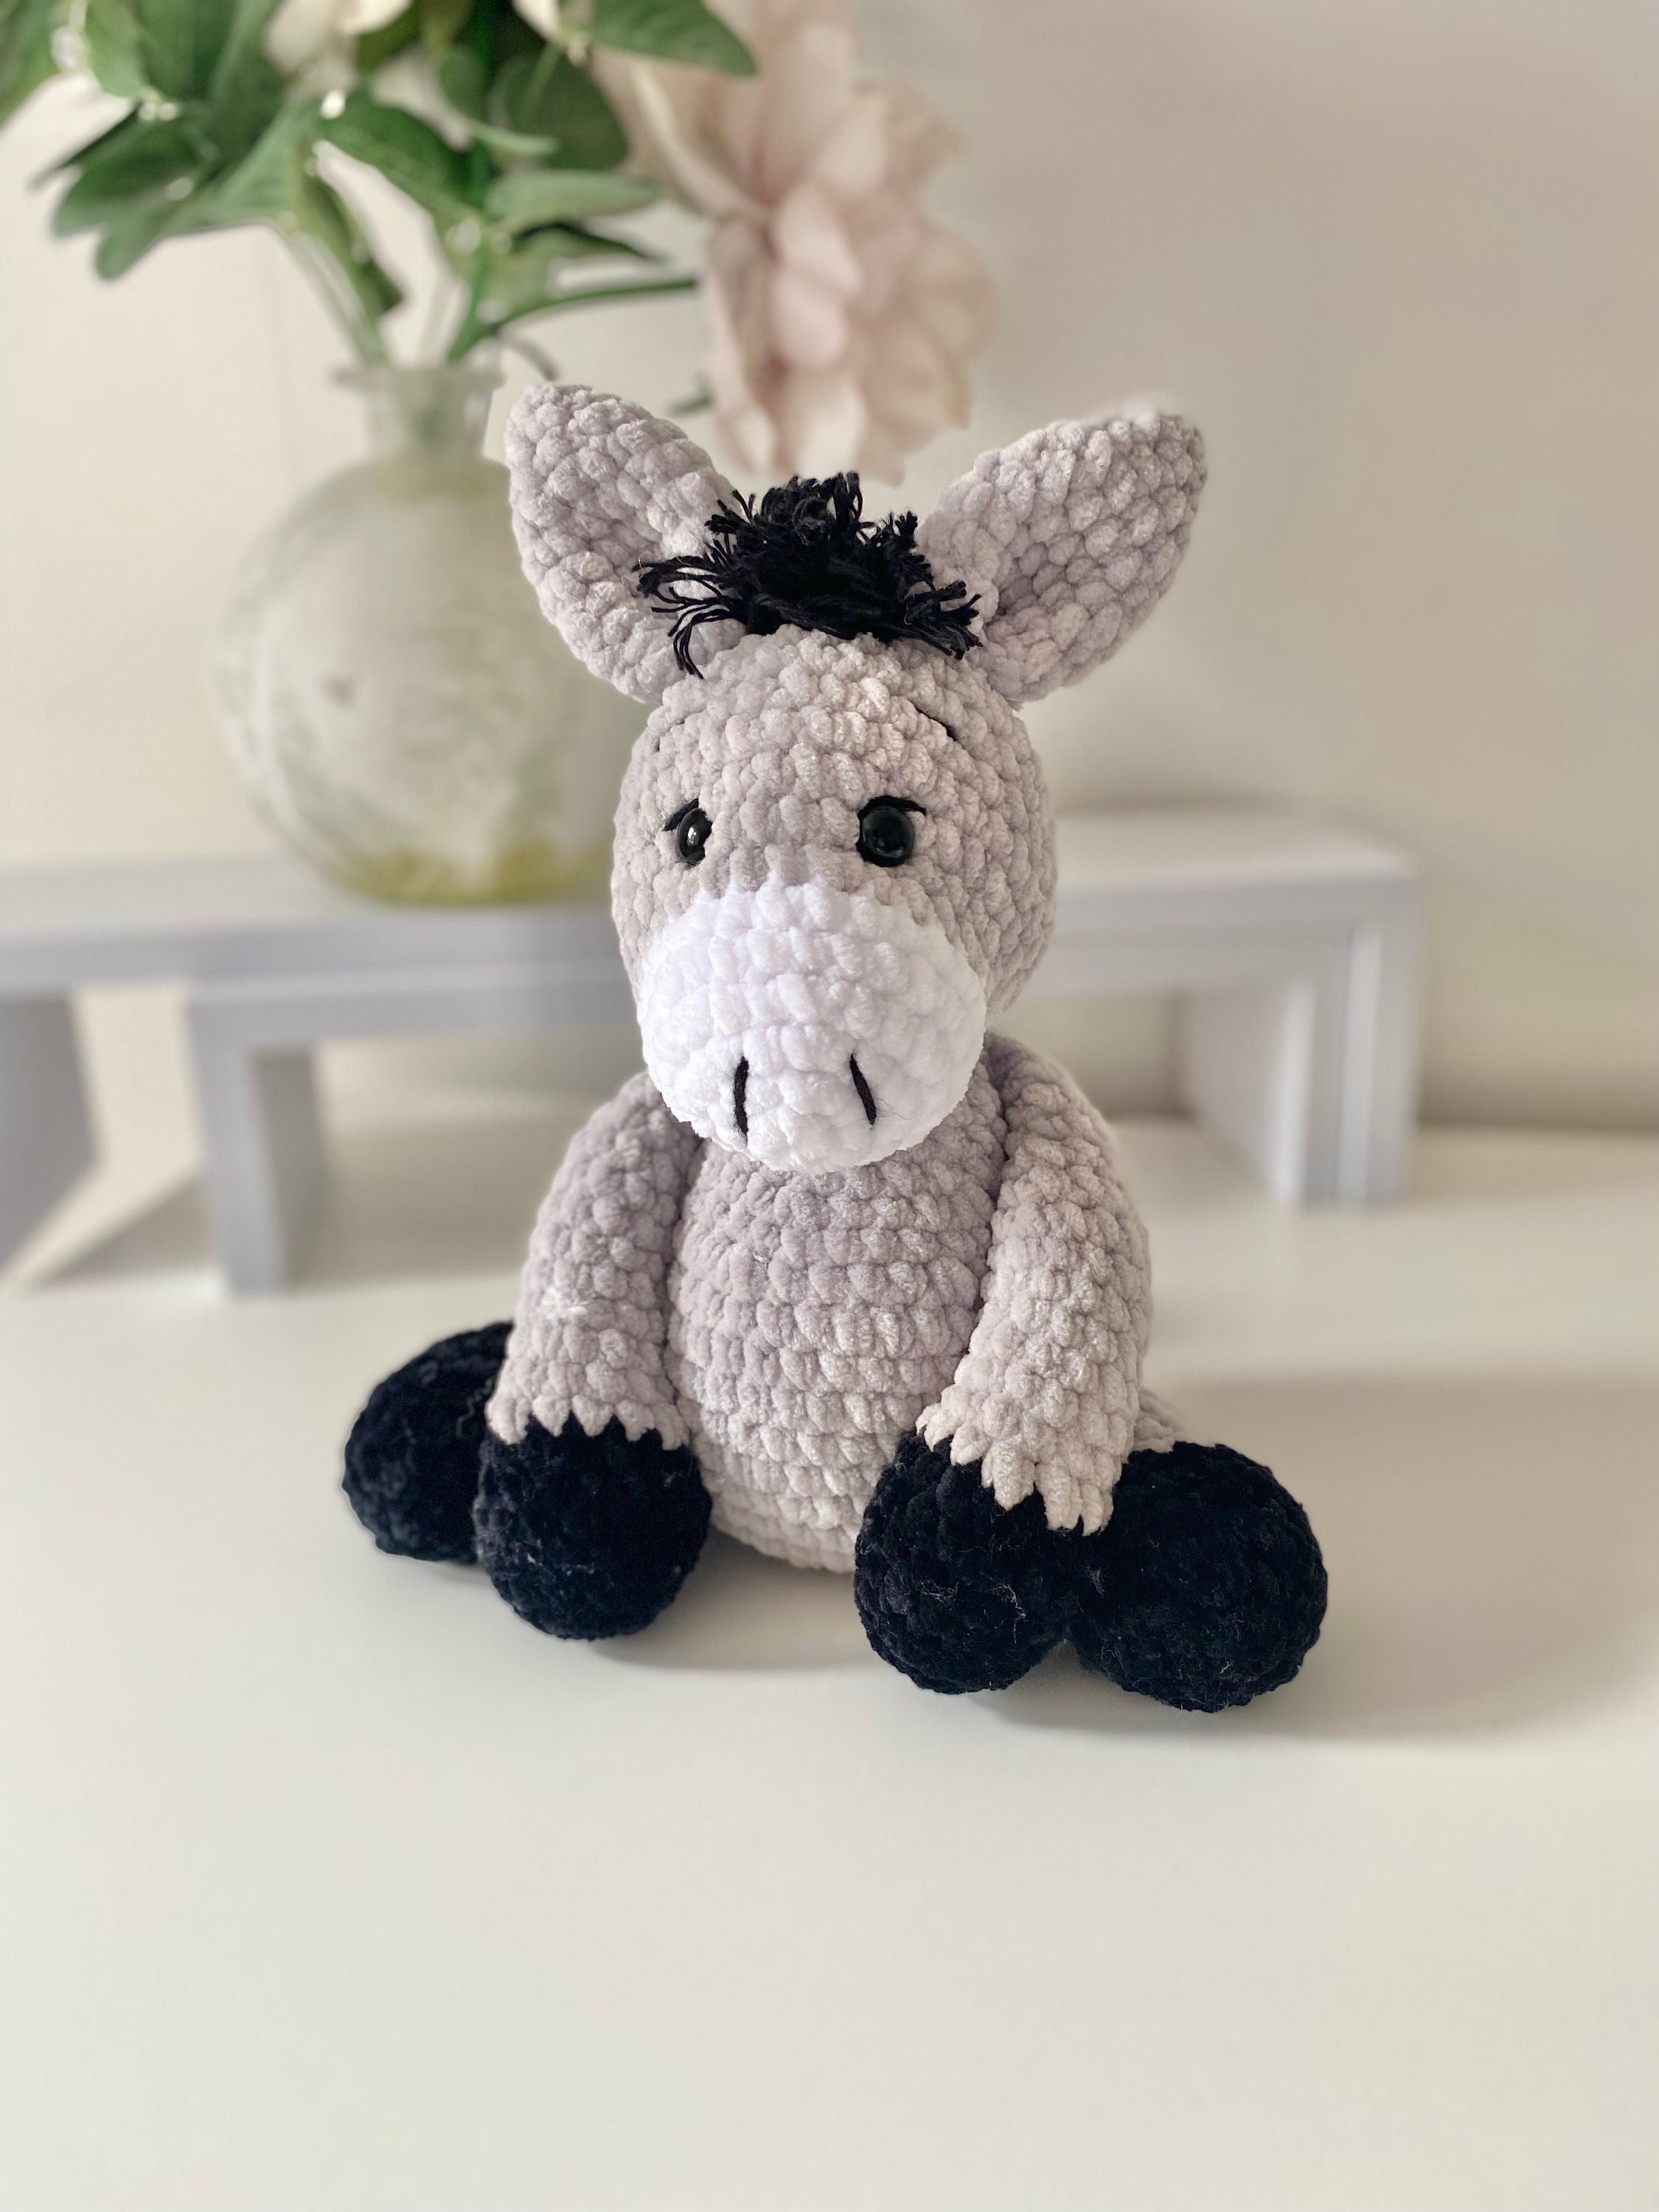 Ravelry: Donkey Amigurumi Stuffed Animal pattern by Megan A